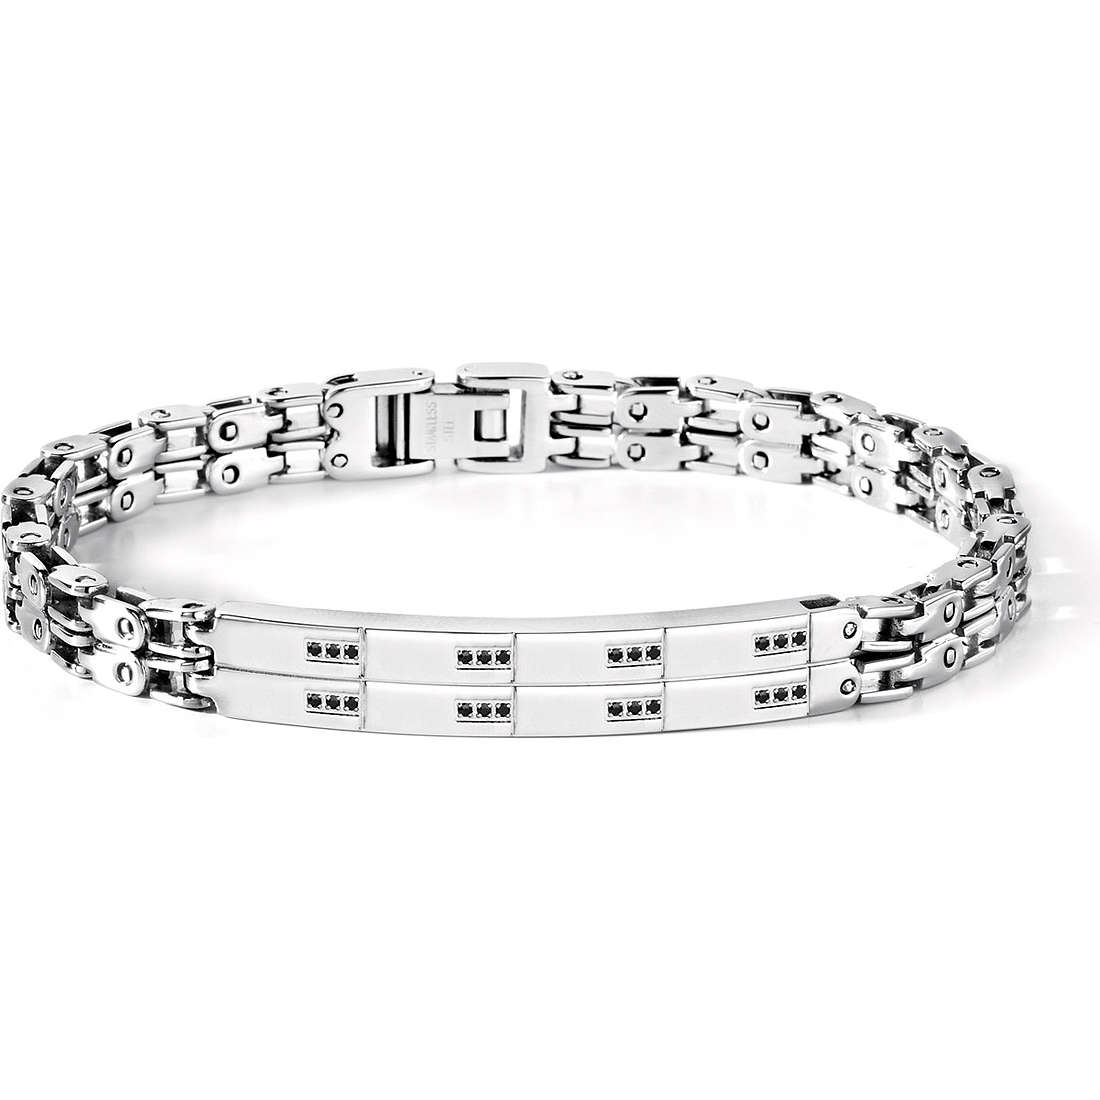 UBR 432 Steel Jewelry Men’s Bracelet